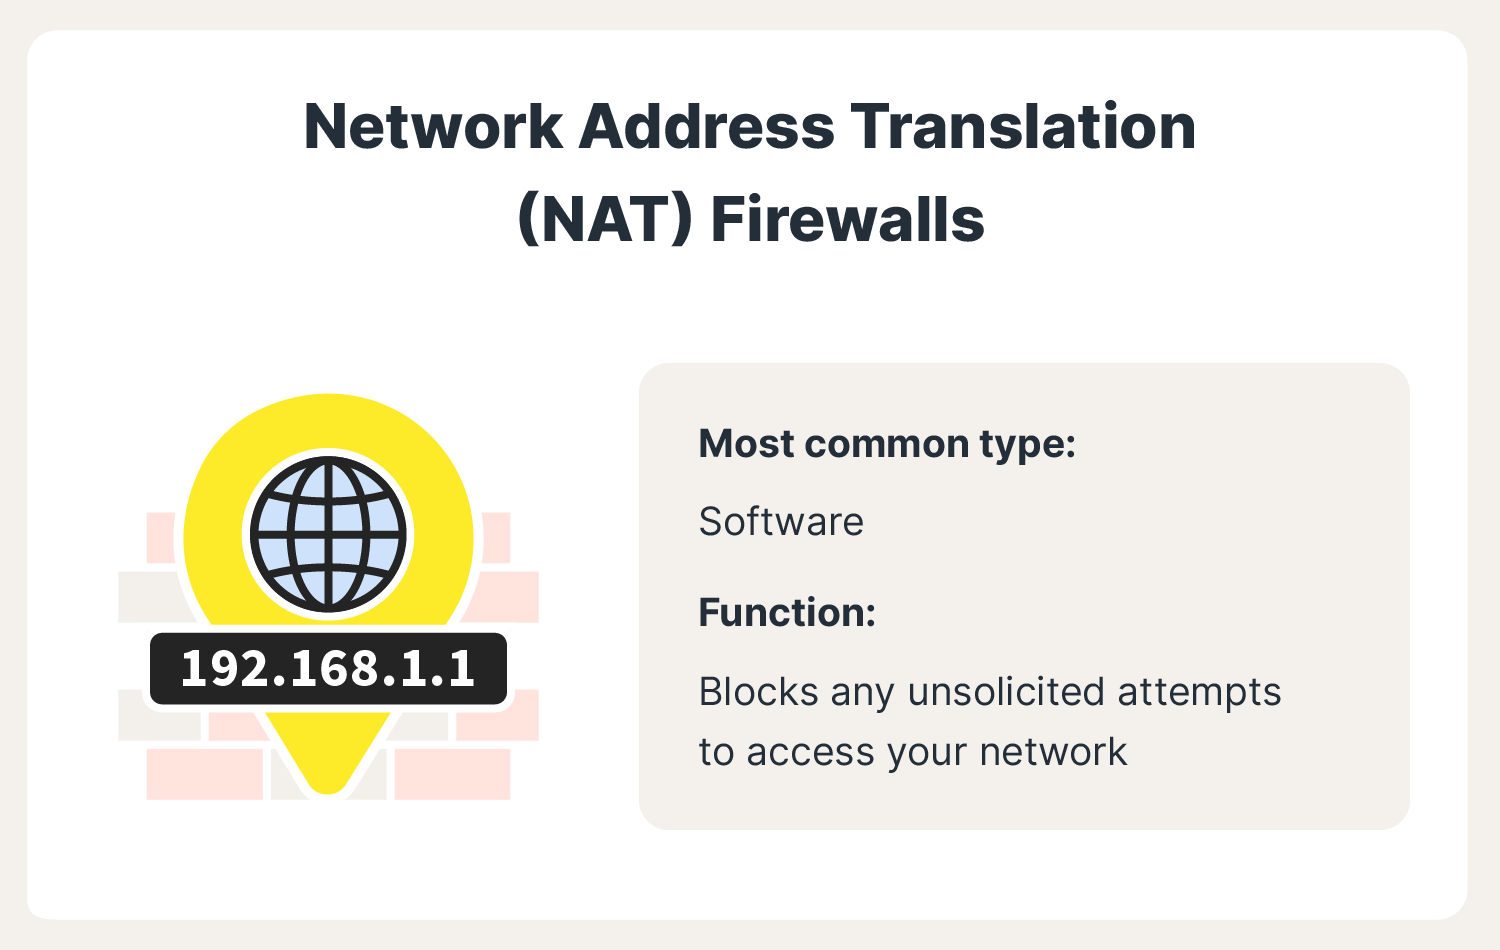 An image describes network address translation firewalls, a popular type of firewall.